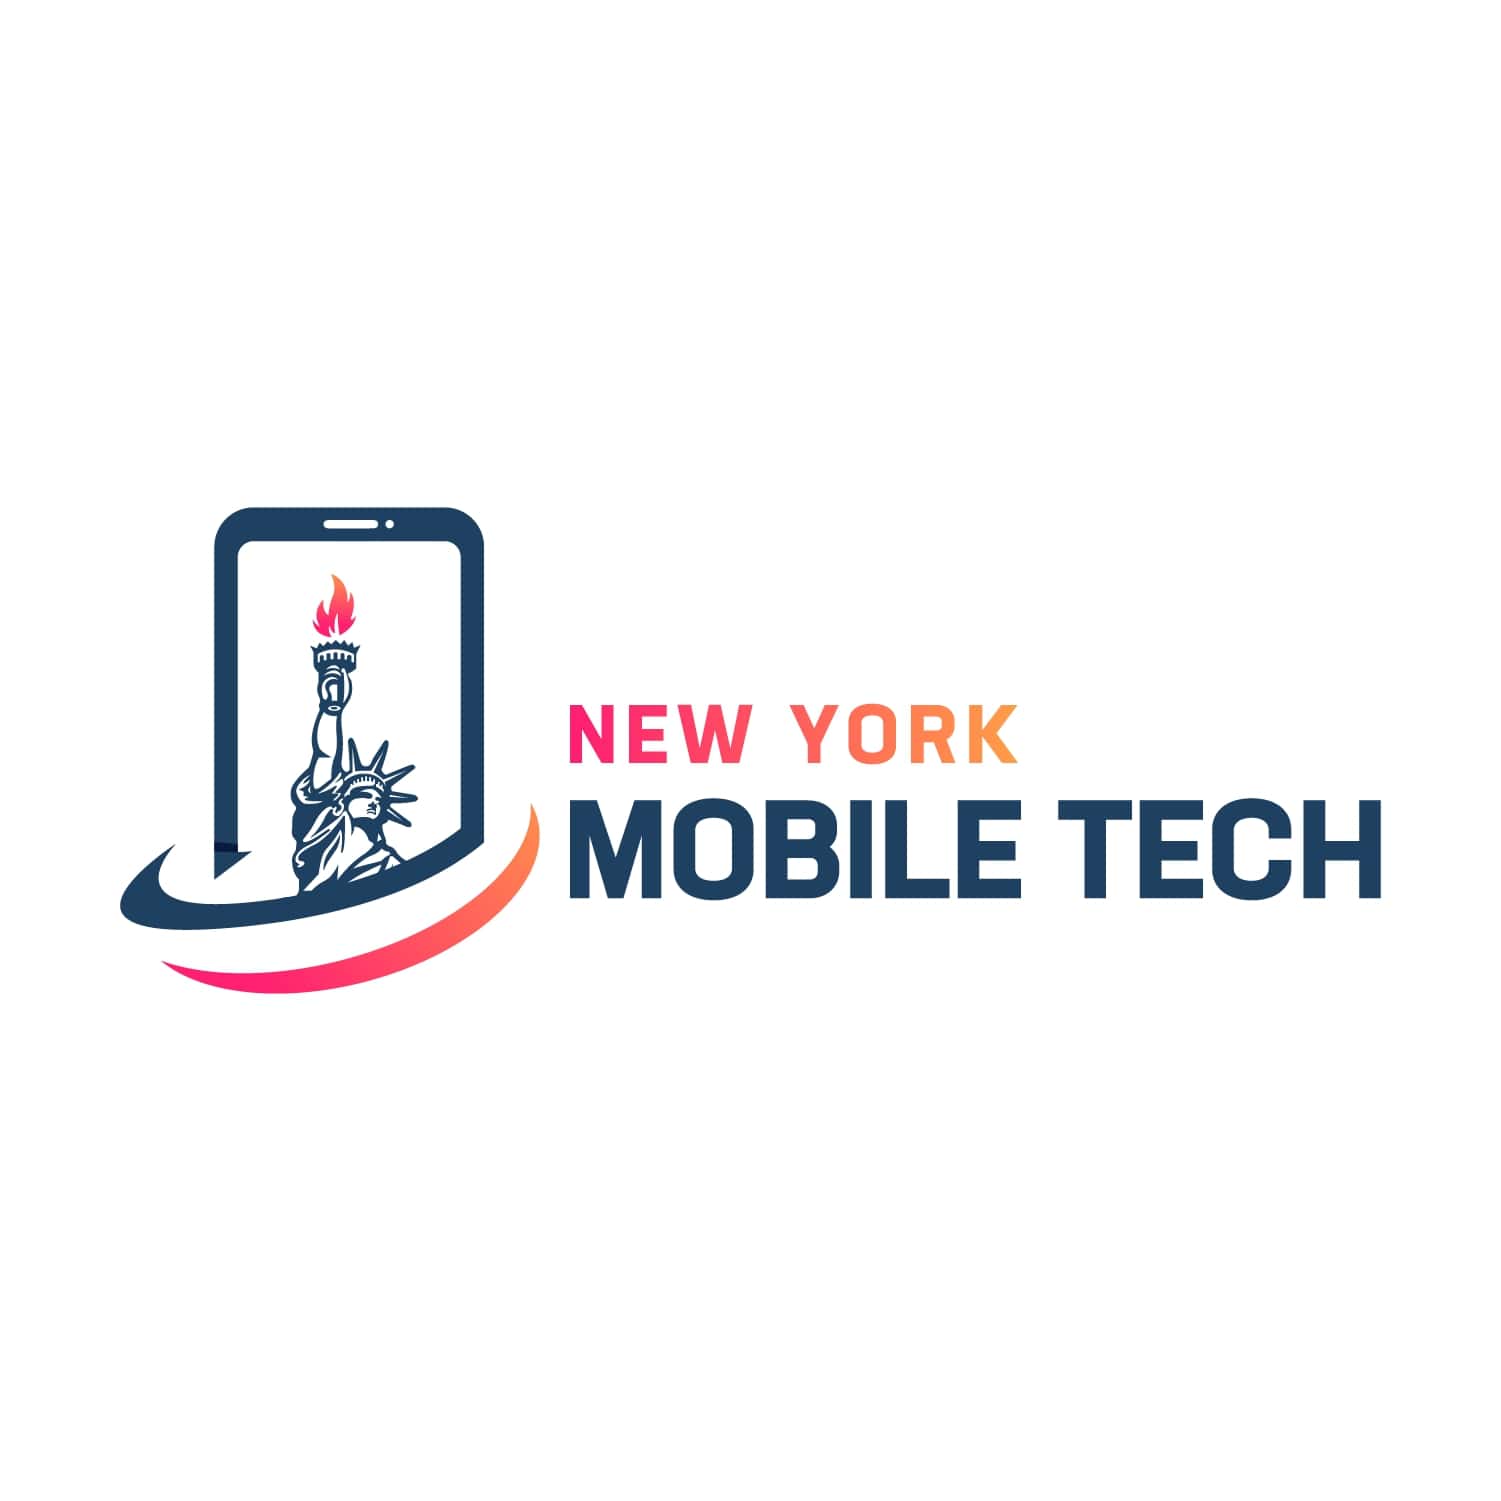 New York Mobile Tech logo